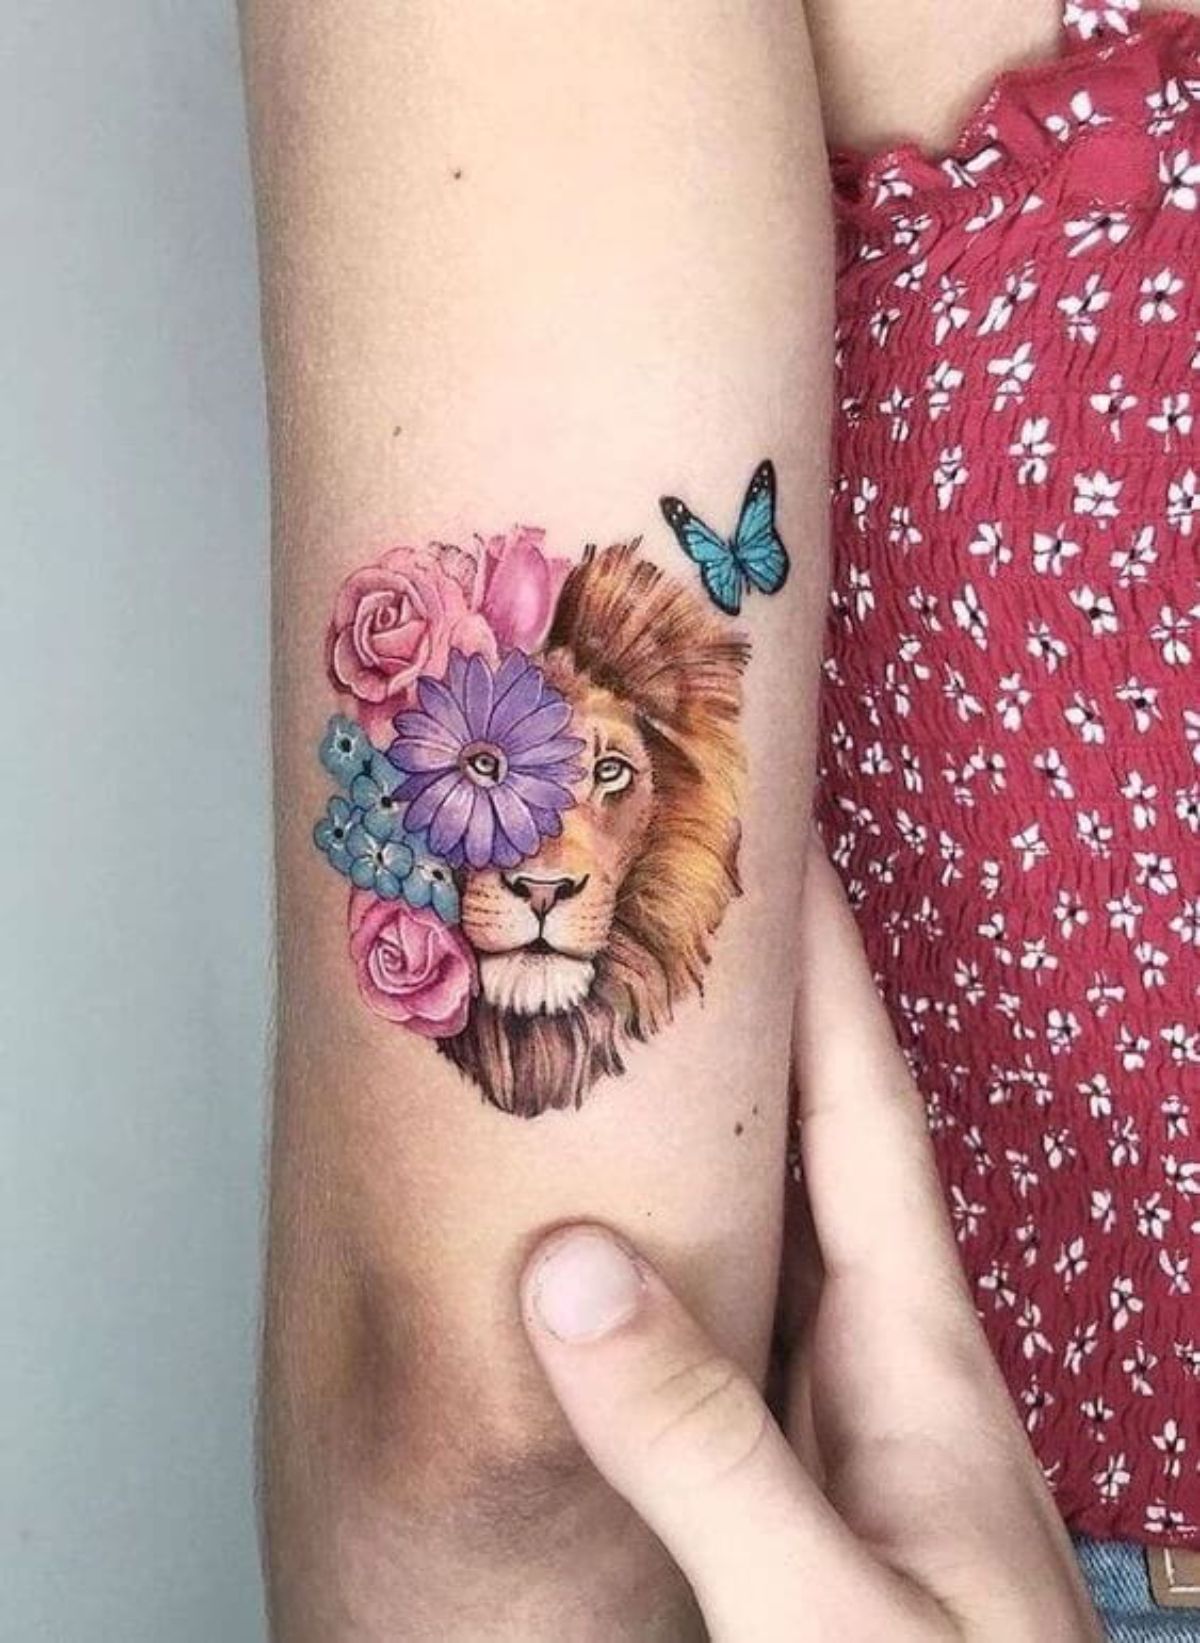 Tatuagem de leão colorida com flores rosa e roxa ao redor